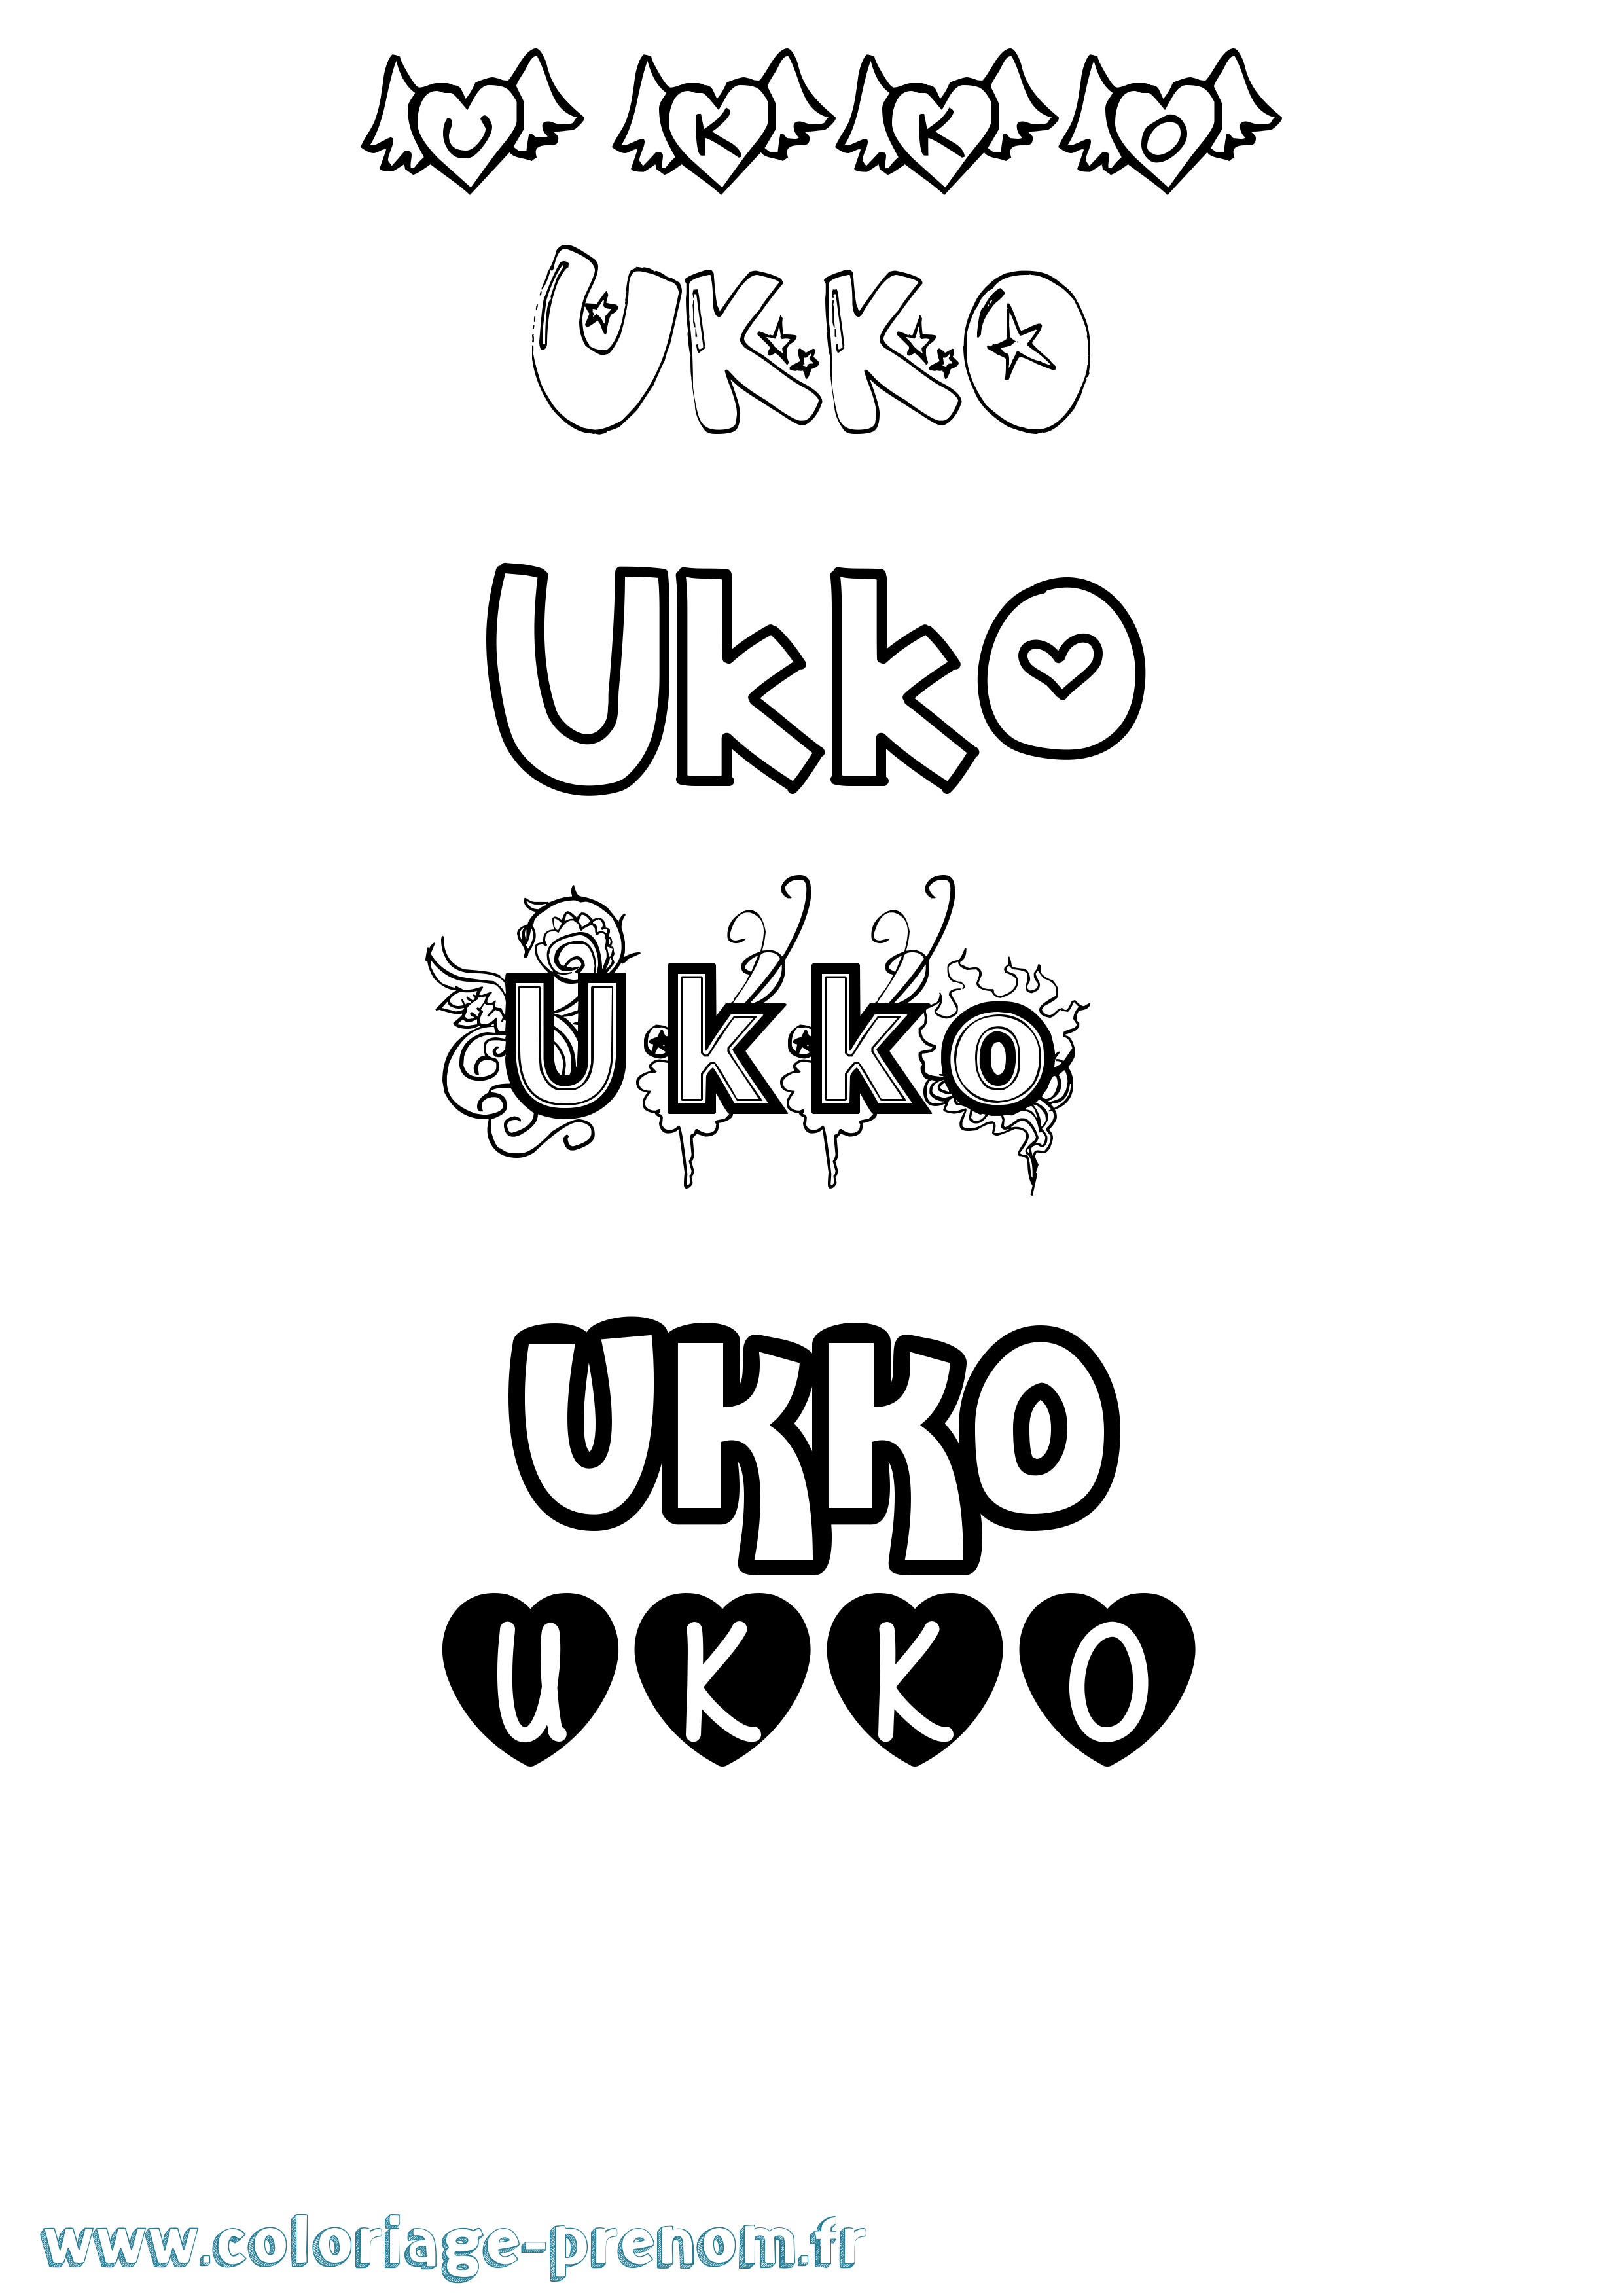 Coloriage prénom Ukko Girly